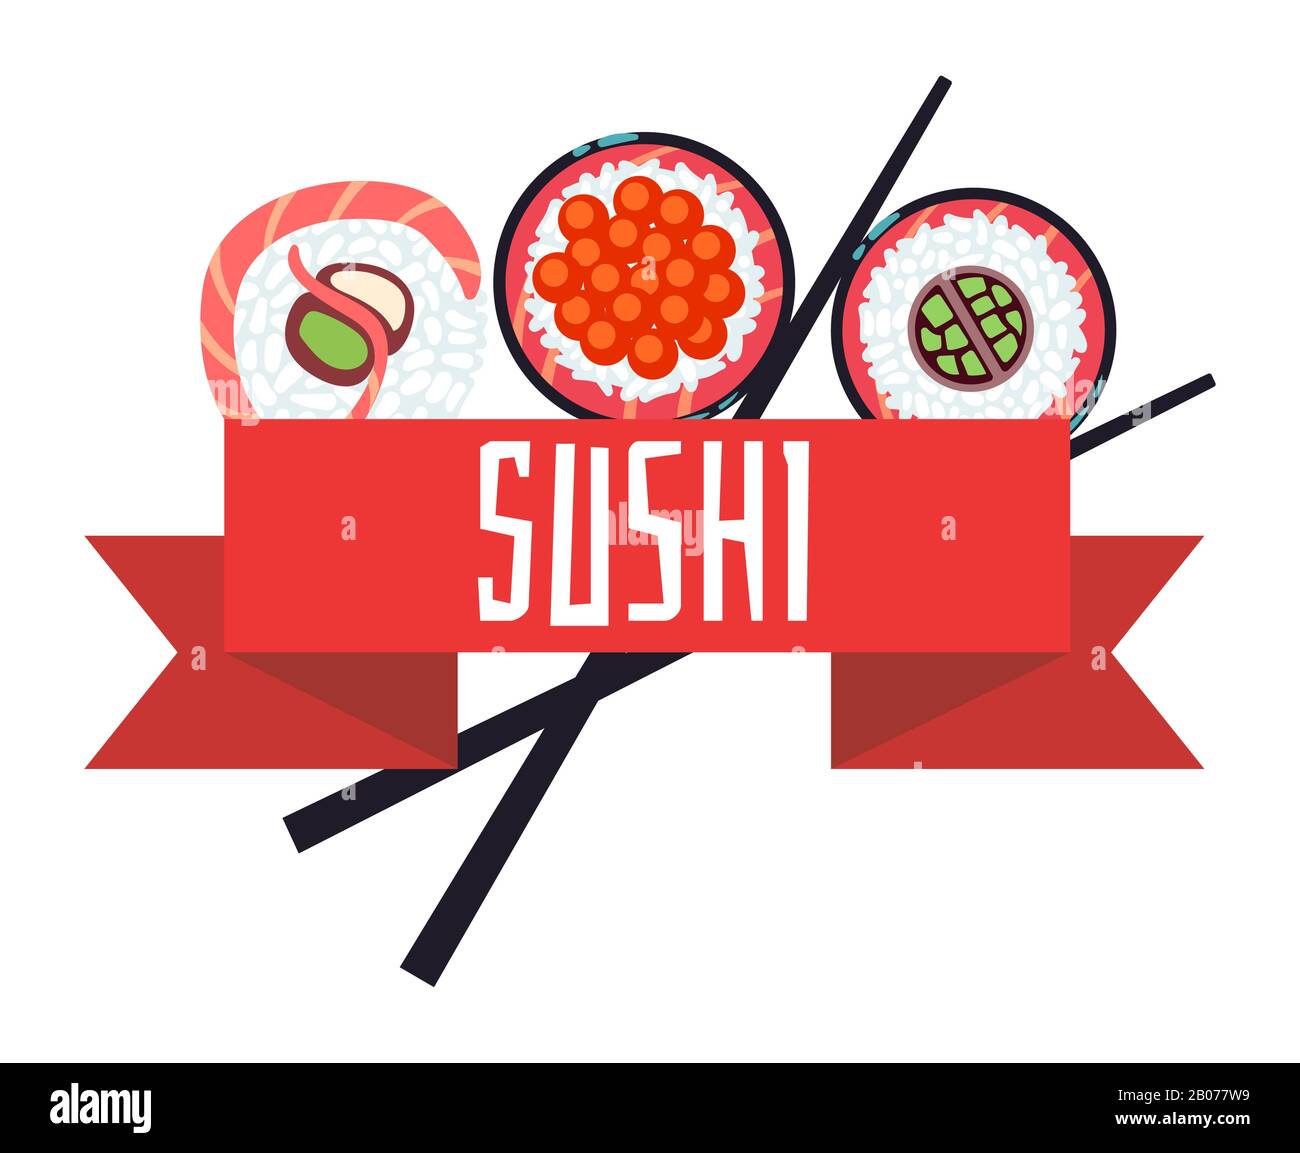 Japanische Vorlage für Vektorgrafiken im Sushi-Menü. asiatisches Restaurant mit Meeresfrüchten Stock Vektor